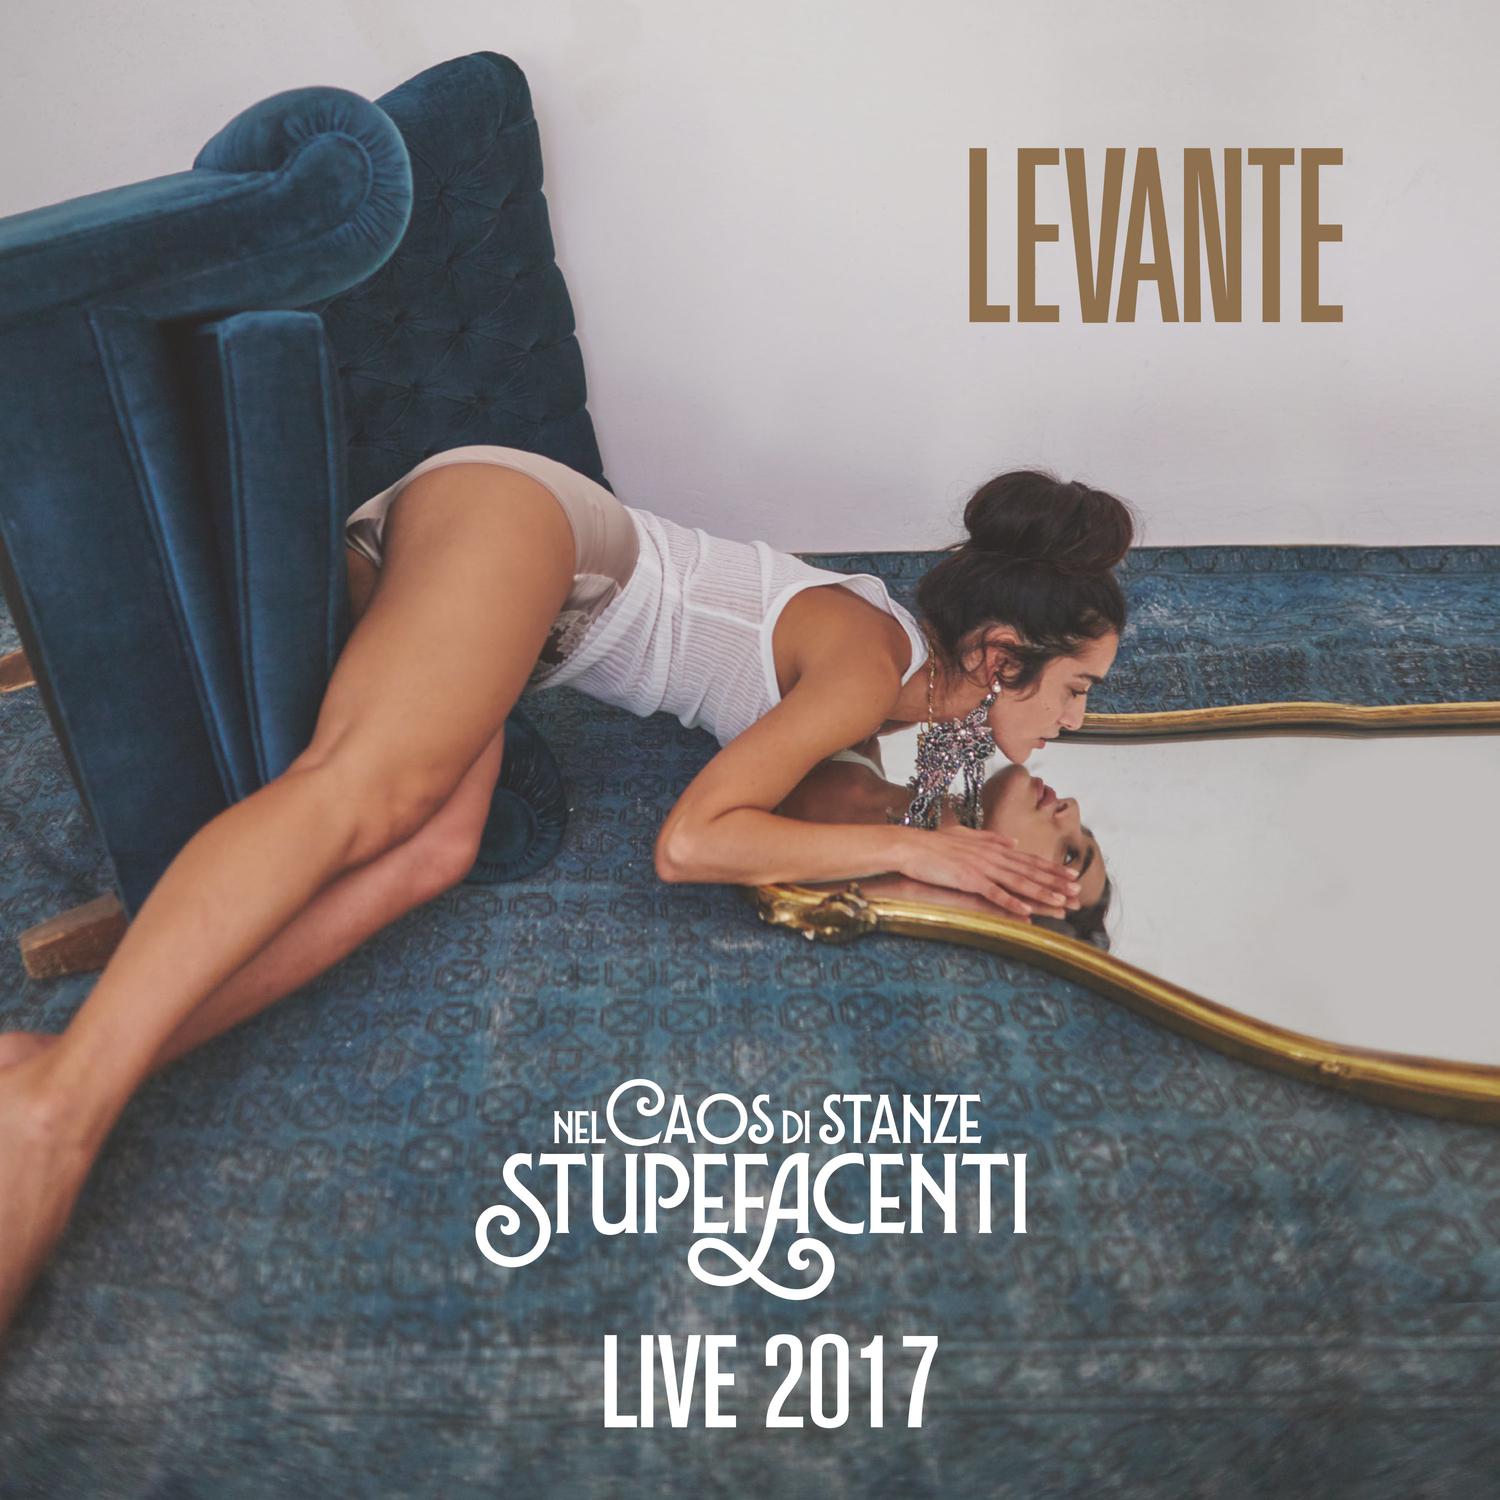 Levante - Duri come me (Live)